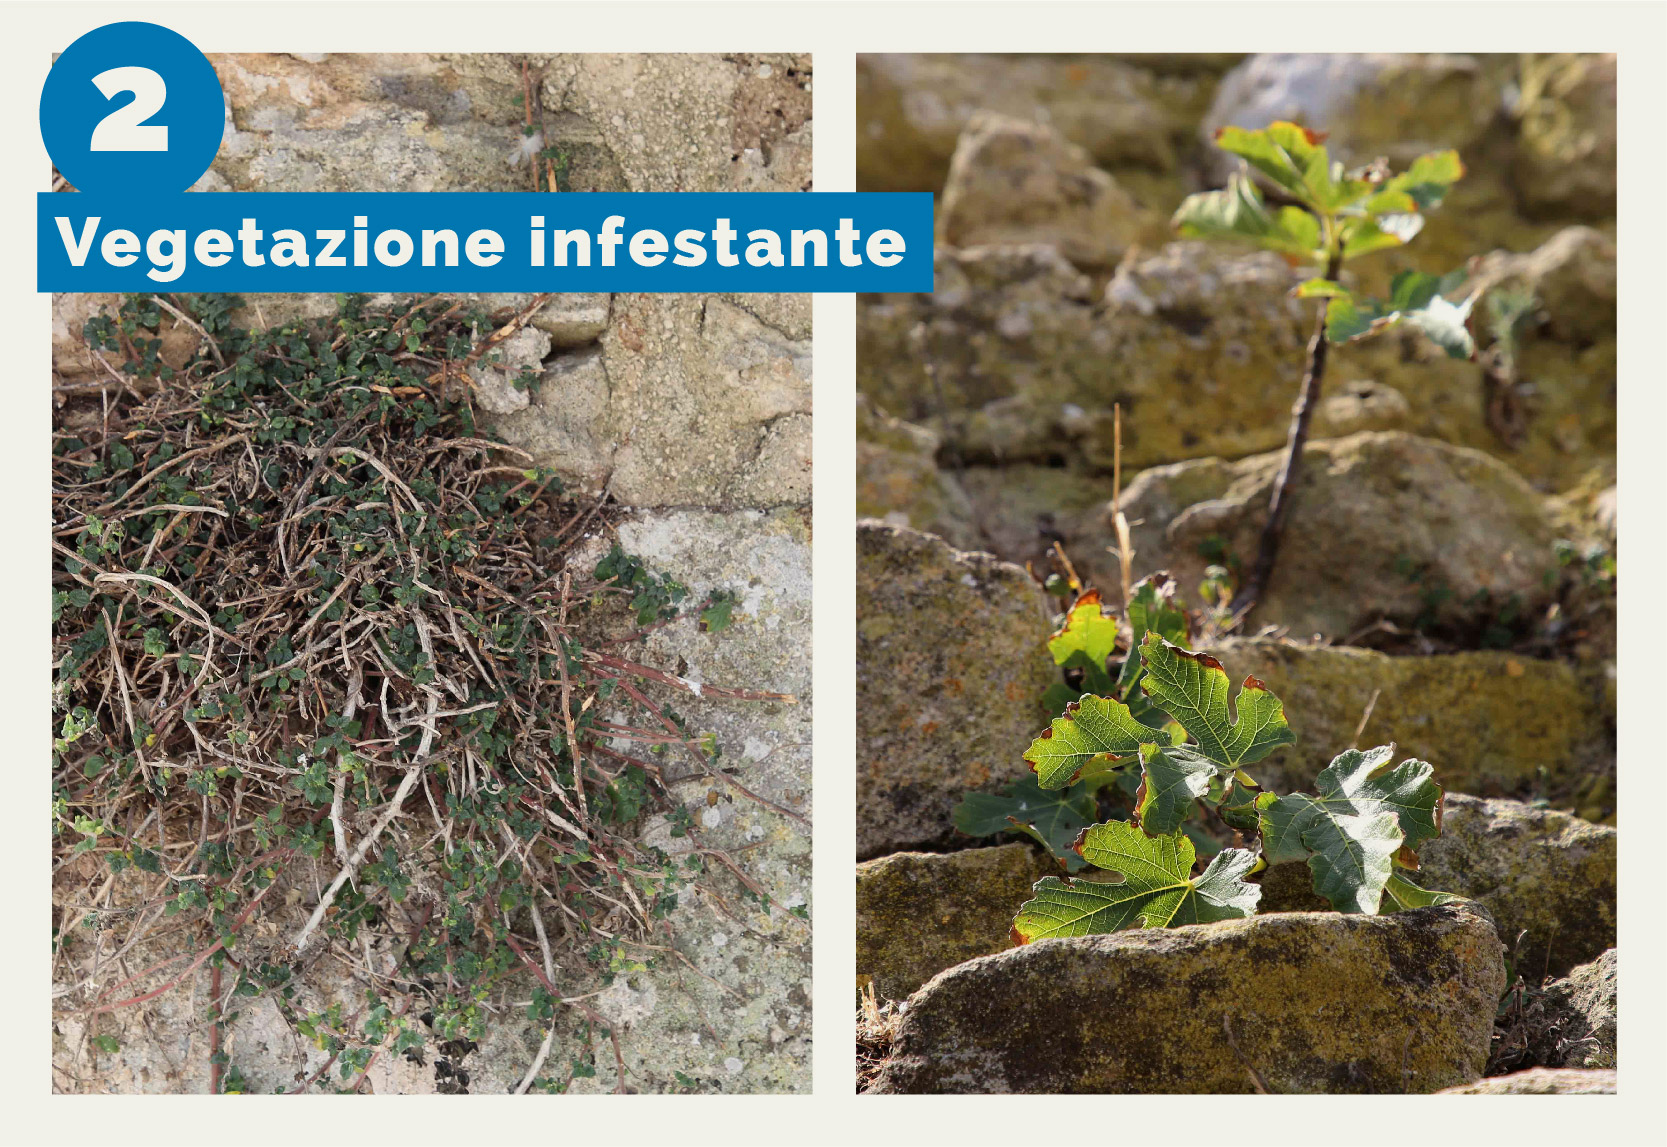 Torre Mozza - L'immagine mostra la vegetazione infestante presente sulla muratura esterna di Torre Mozza